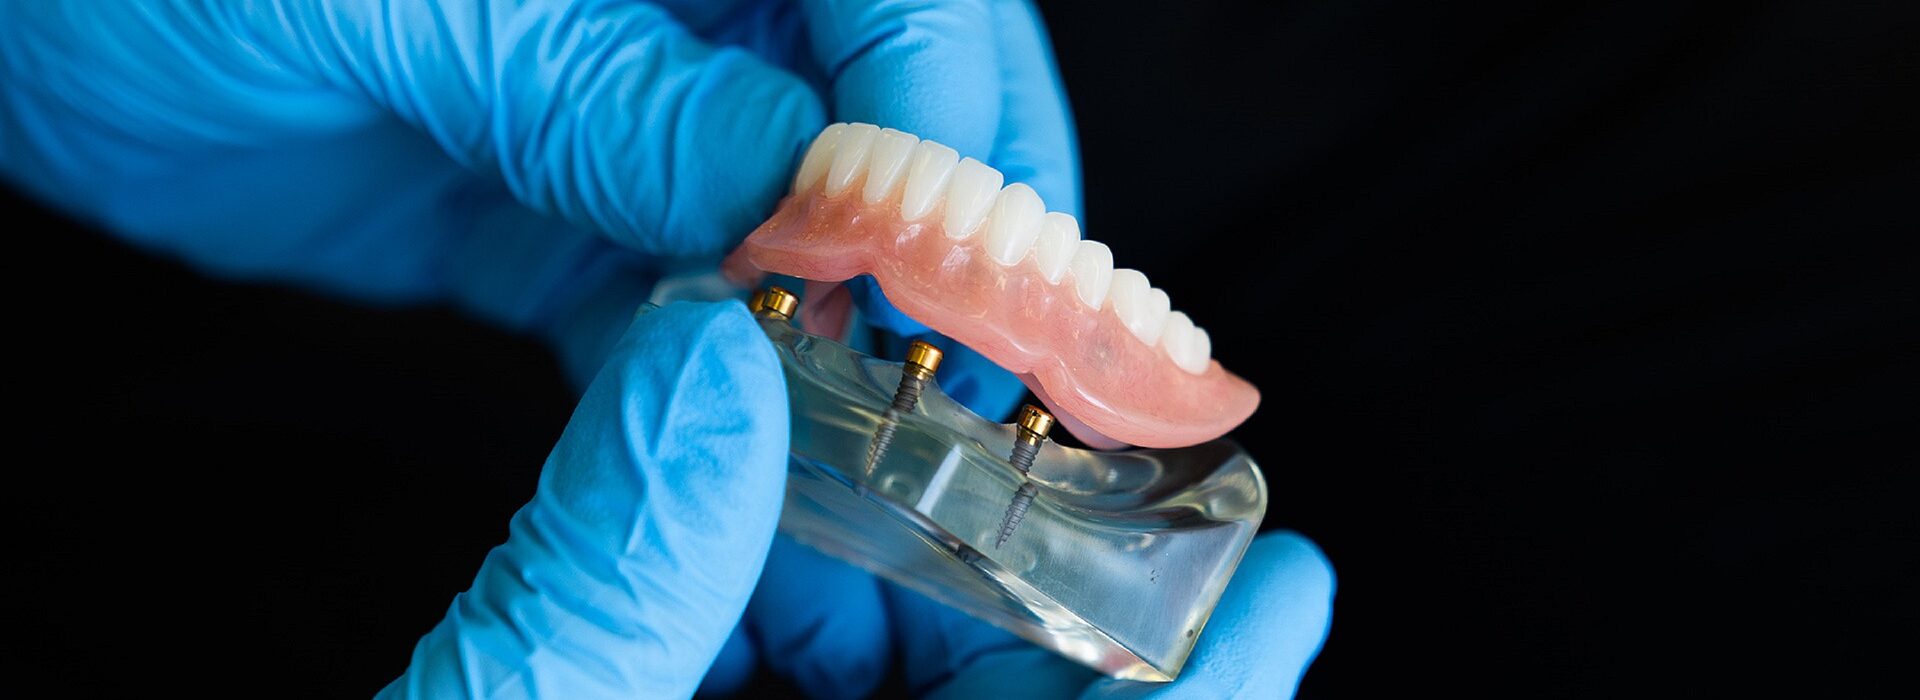 protesi dentale